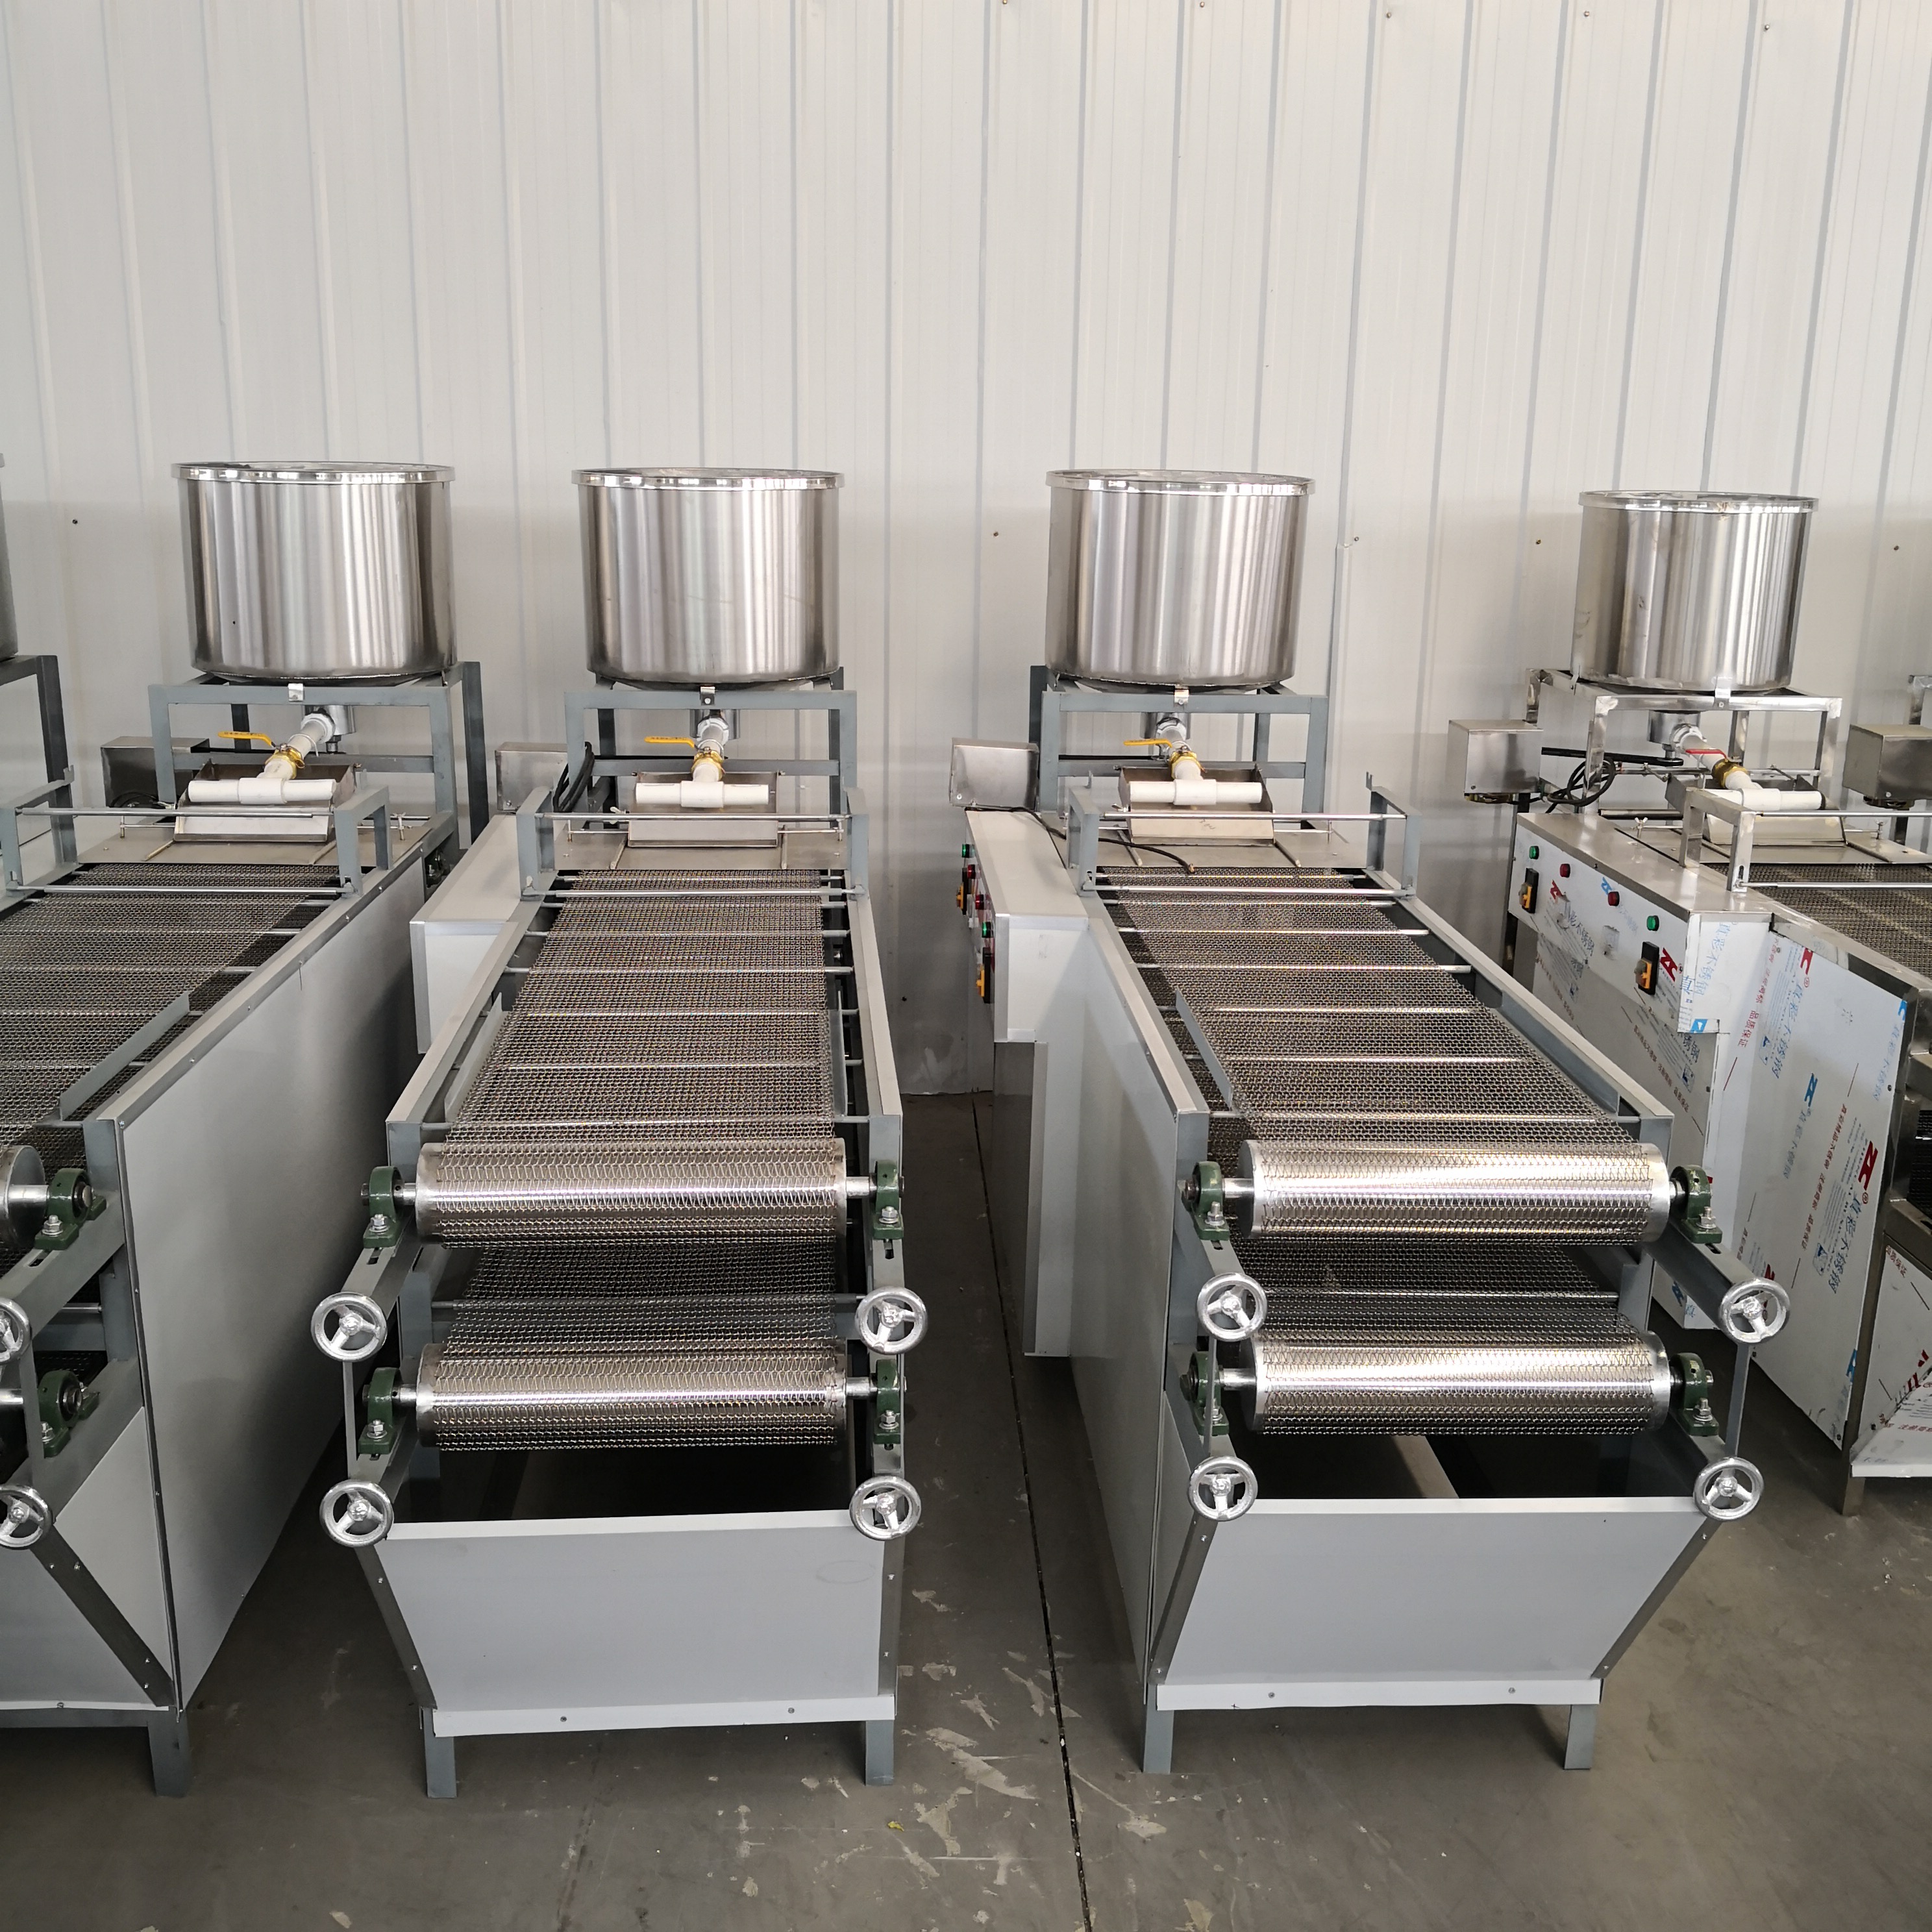 商用千张豆腐皮机设备大型全自动豆腐皮机厂家提供完善的技术培训学习山东豆将3